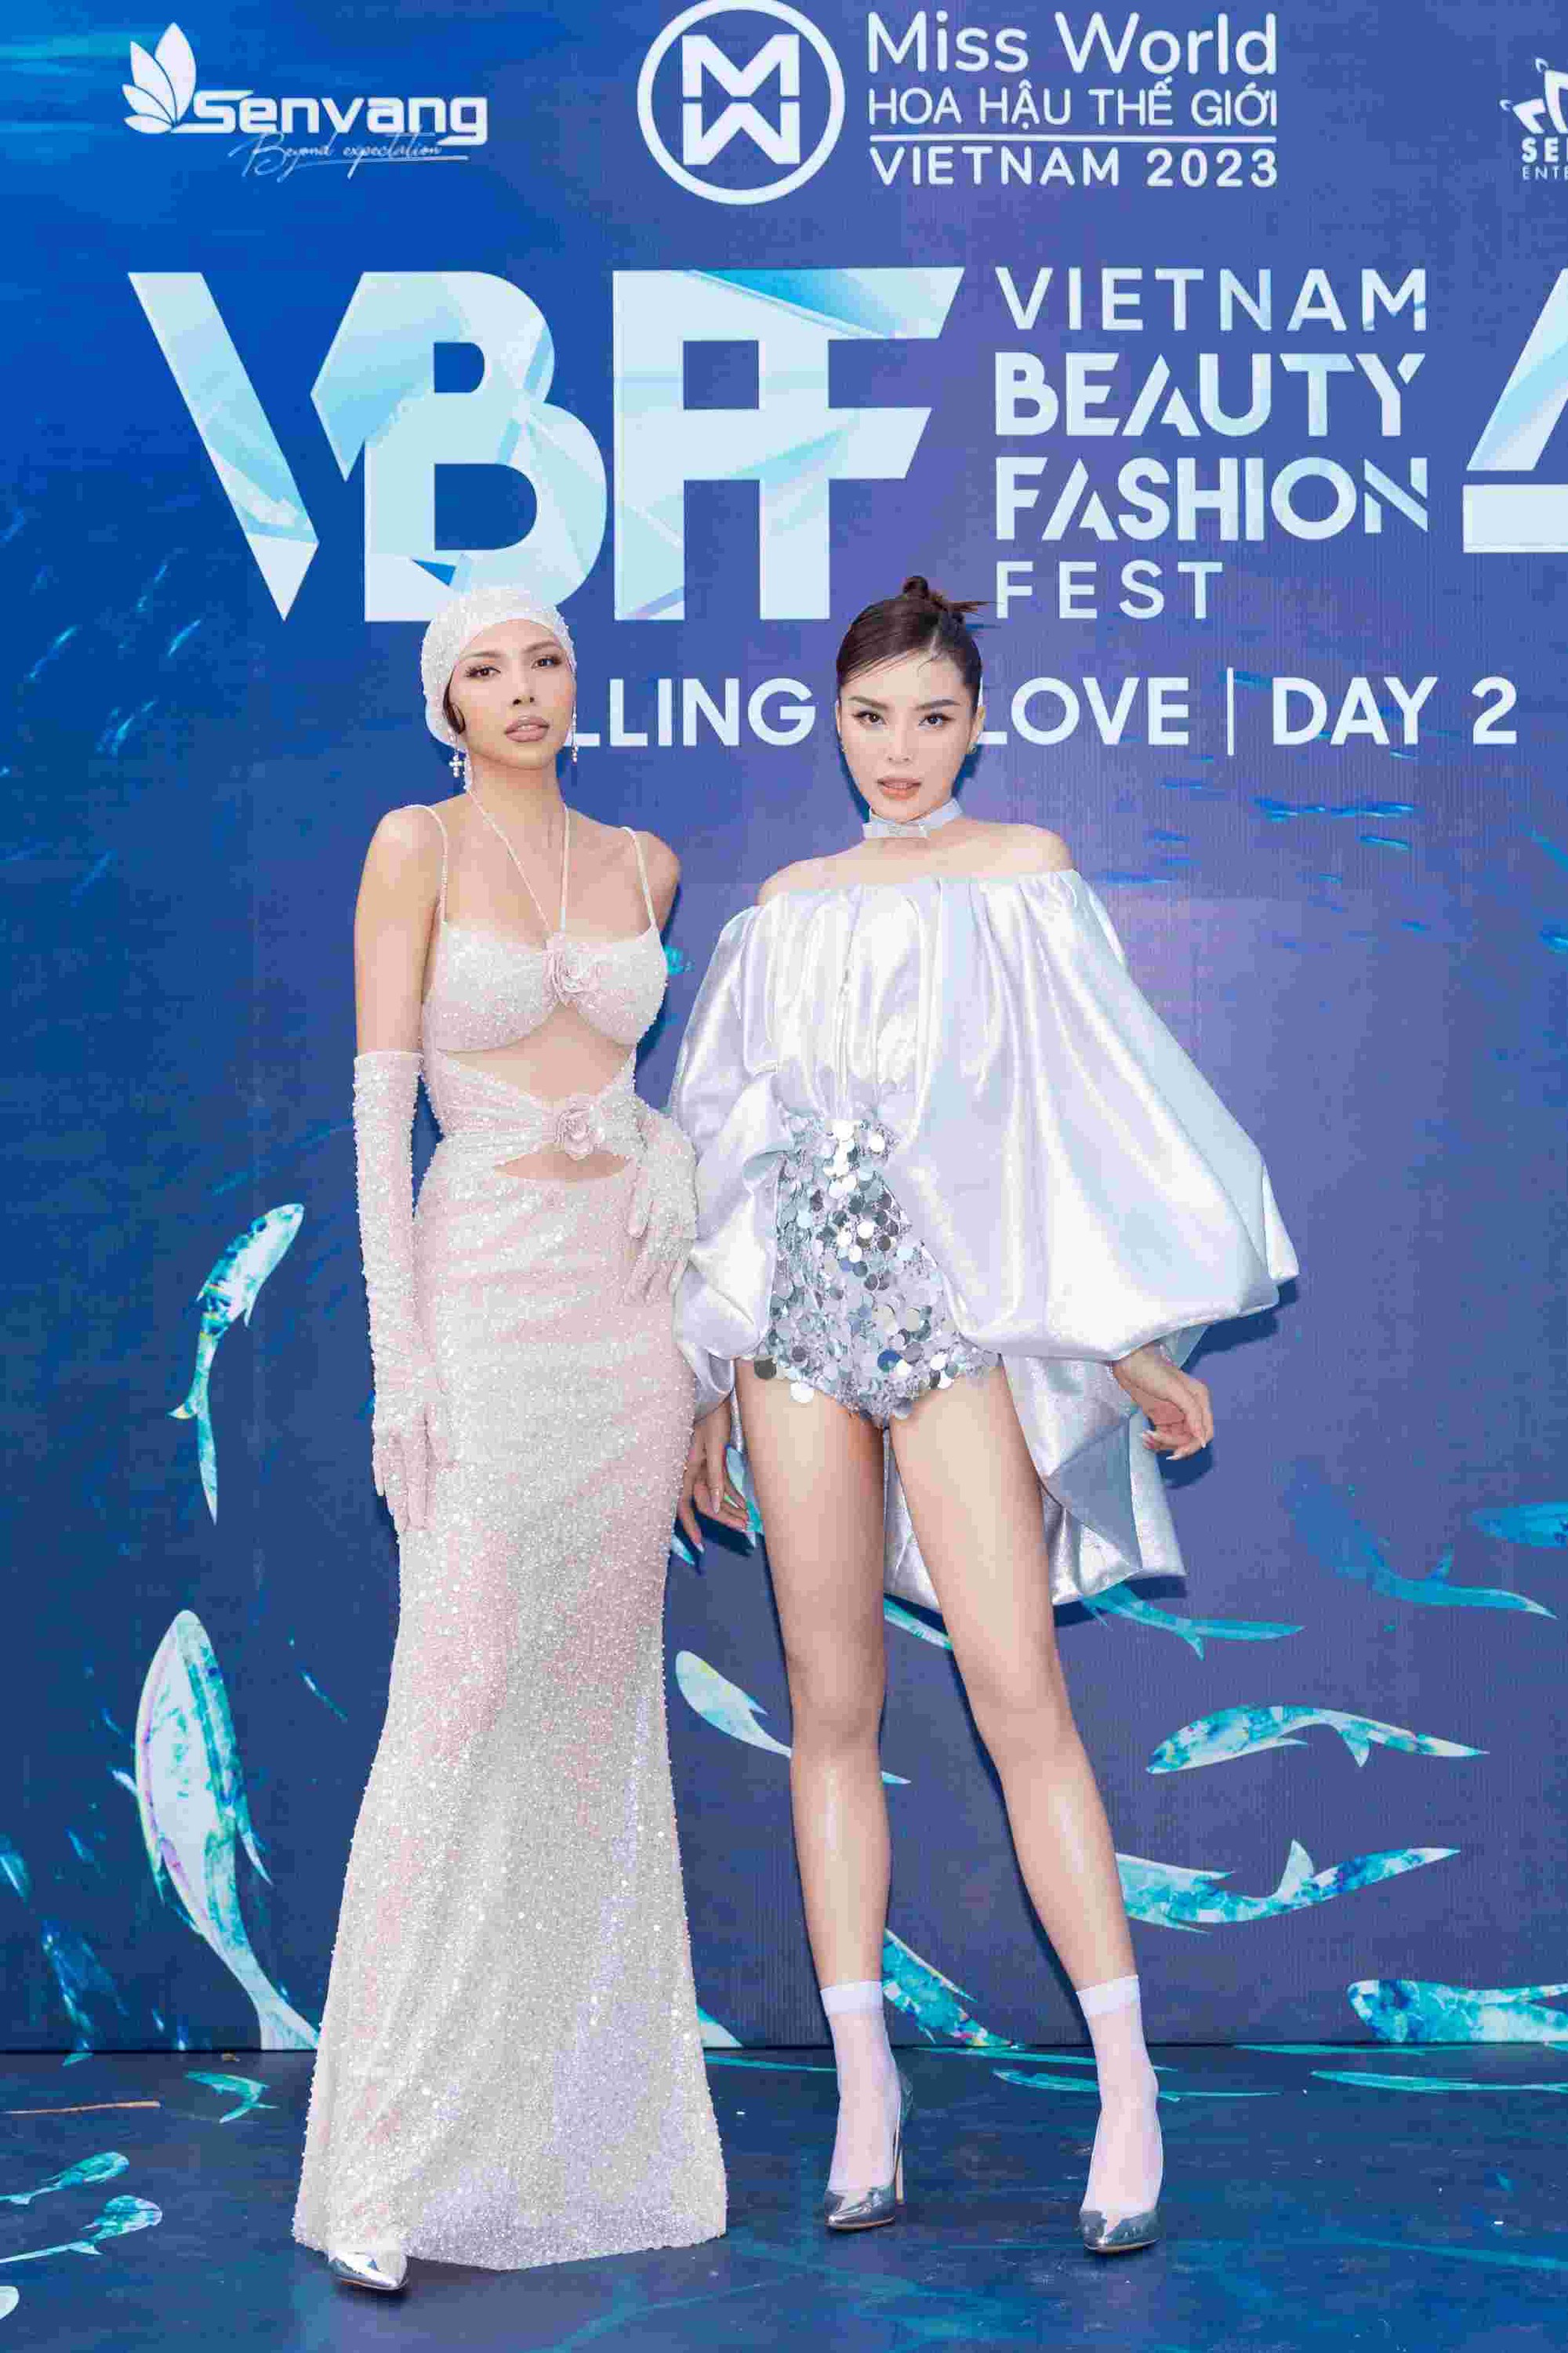 Đông đảo người đẹp khoe sắc trên thảm đỏ Vietnam Beauty Fashion Fest 4  - Ảnh 5.